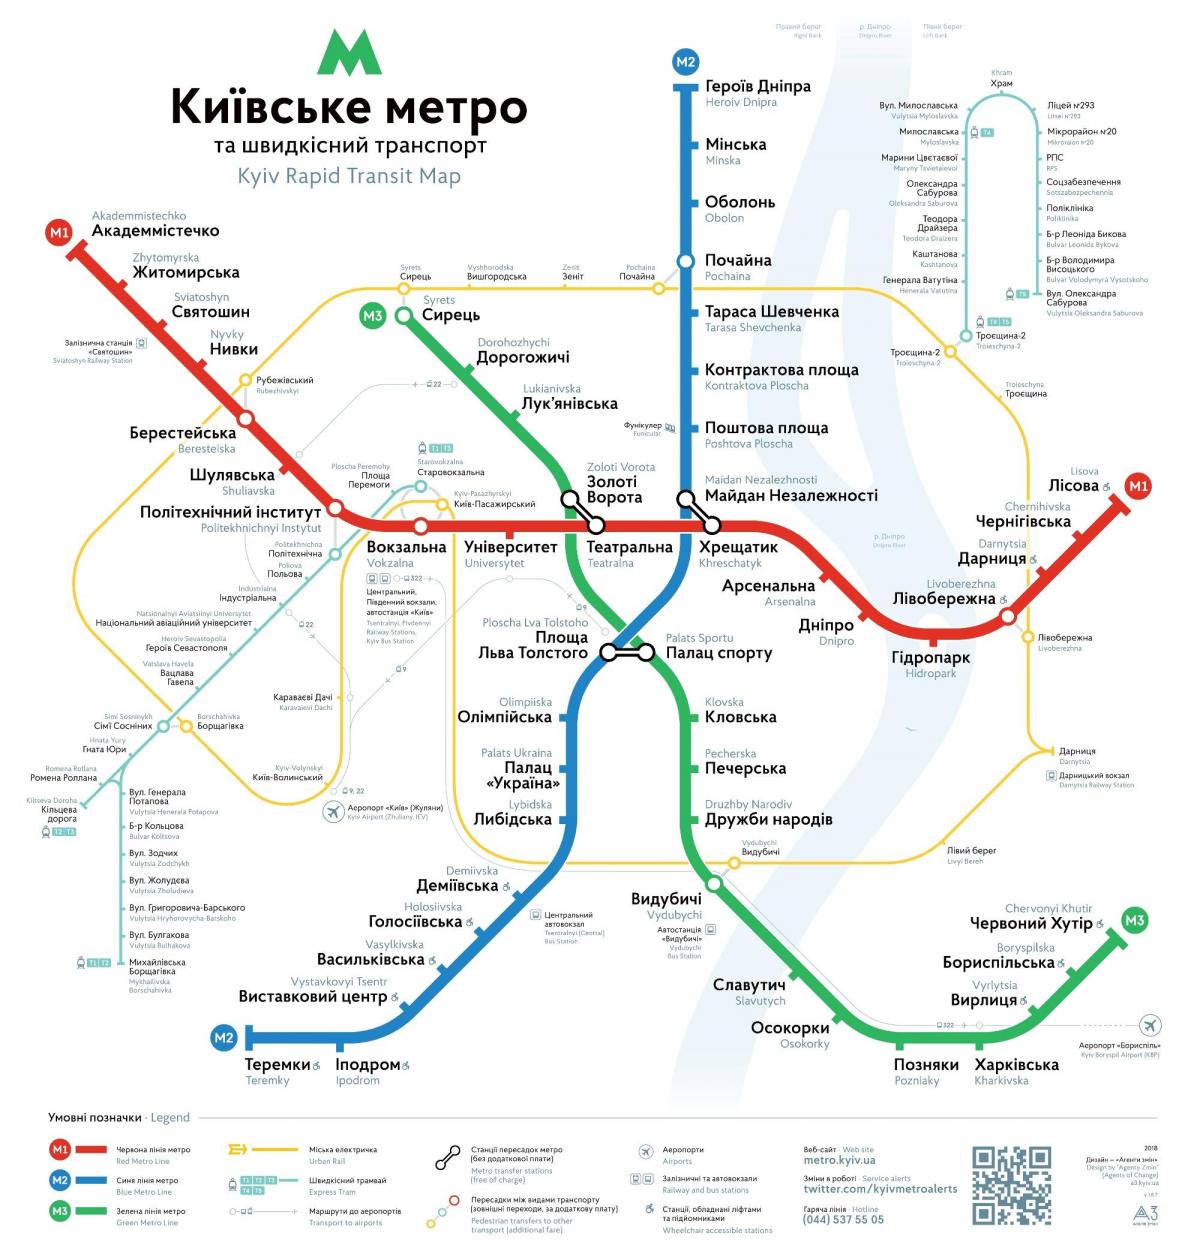 Mapa das estações do metrô de Kiev